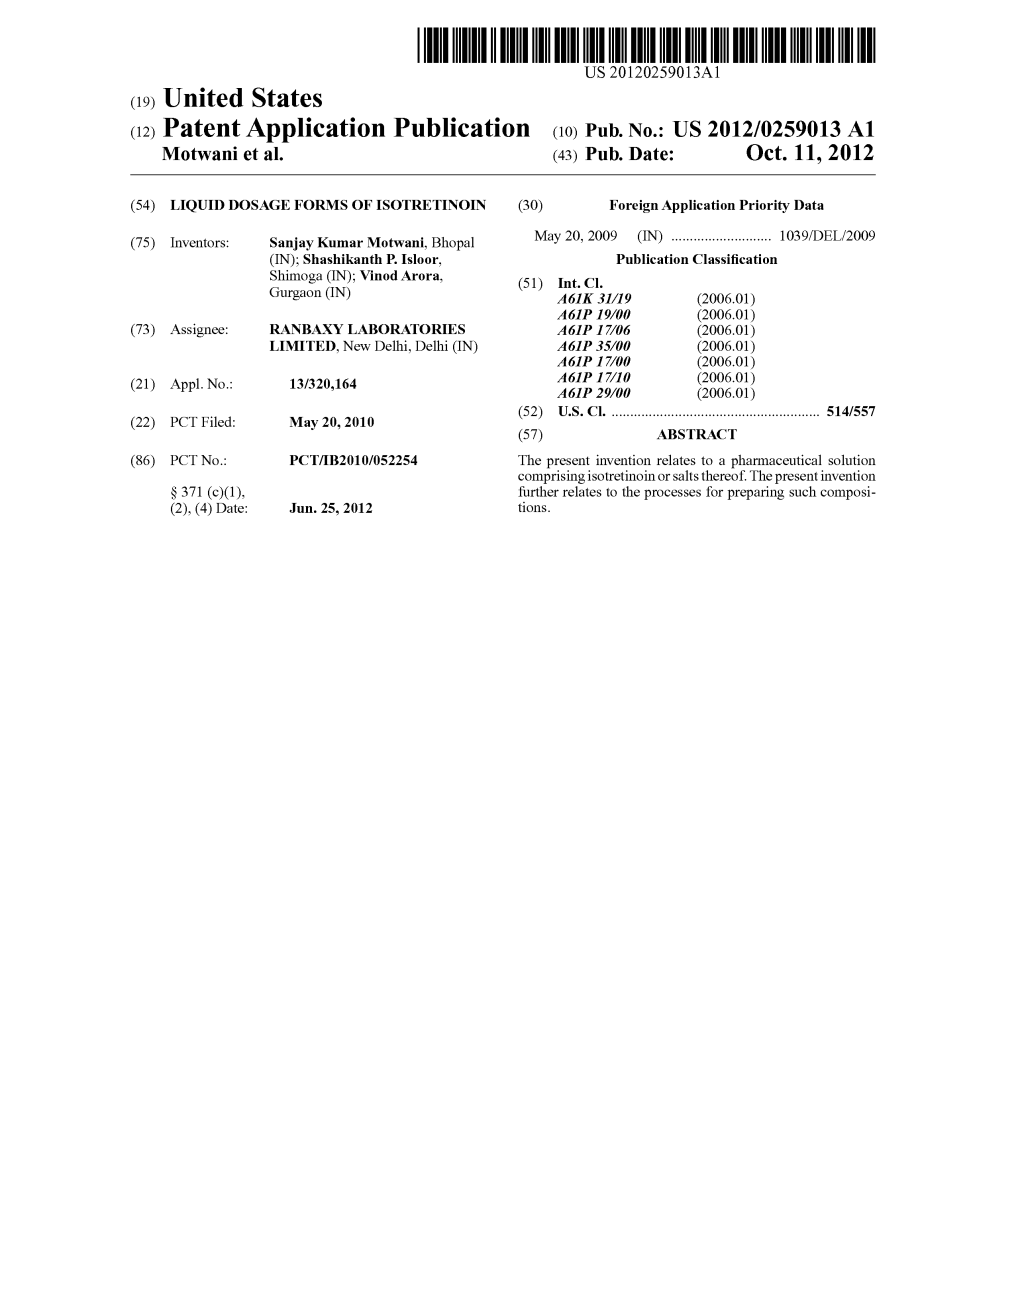 (12) Patent Application Publication (10) Pub. No.: US 2012/0259013 A1 Motwani Et Al